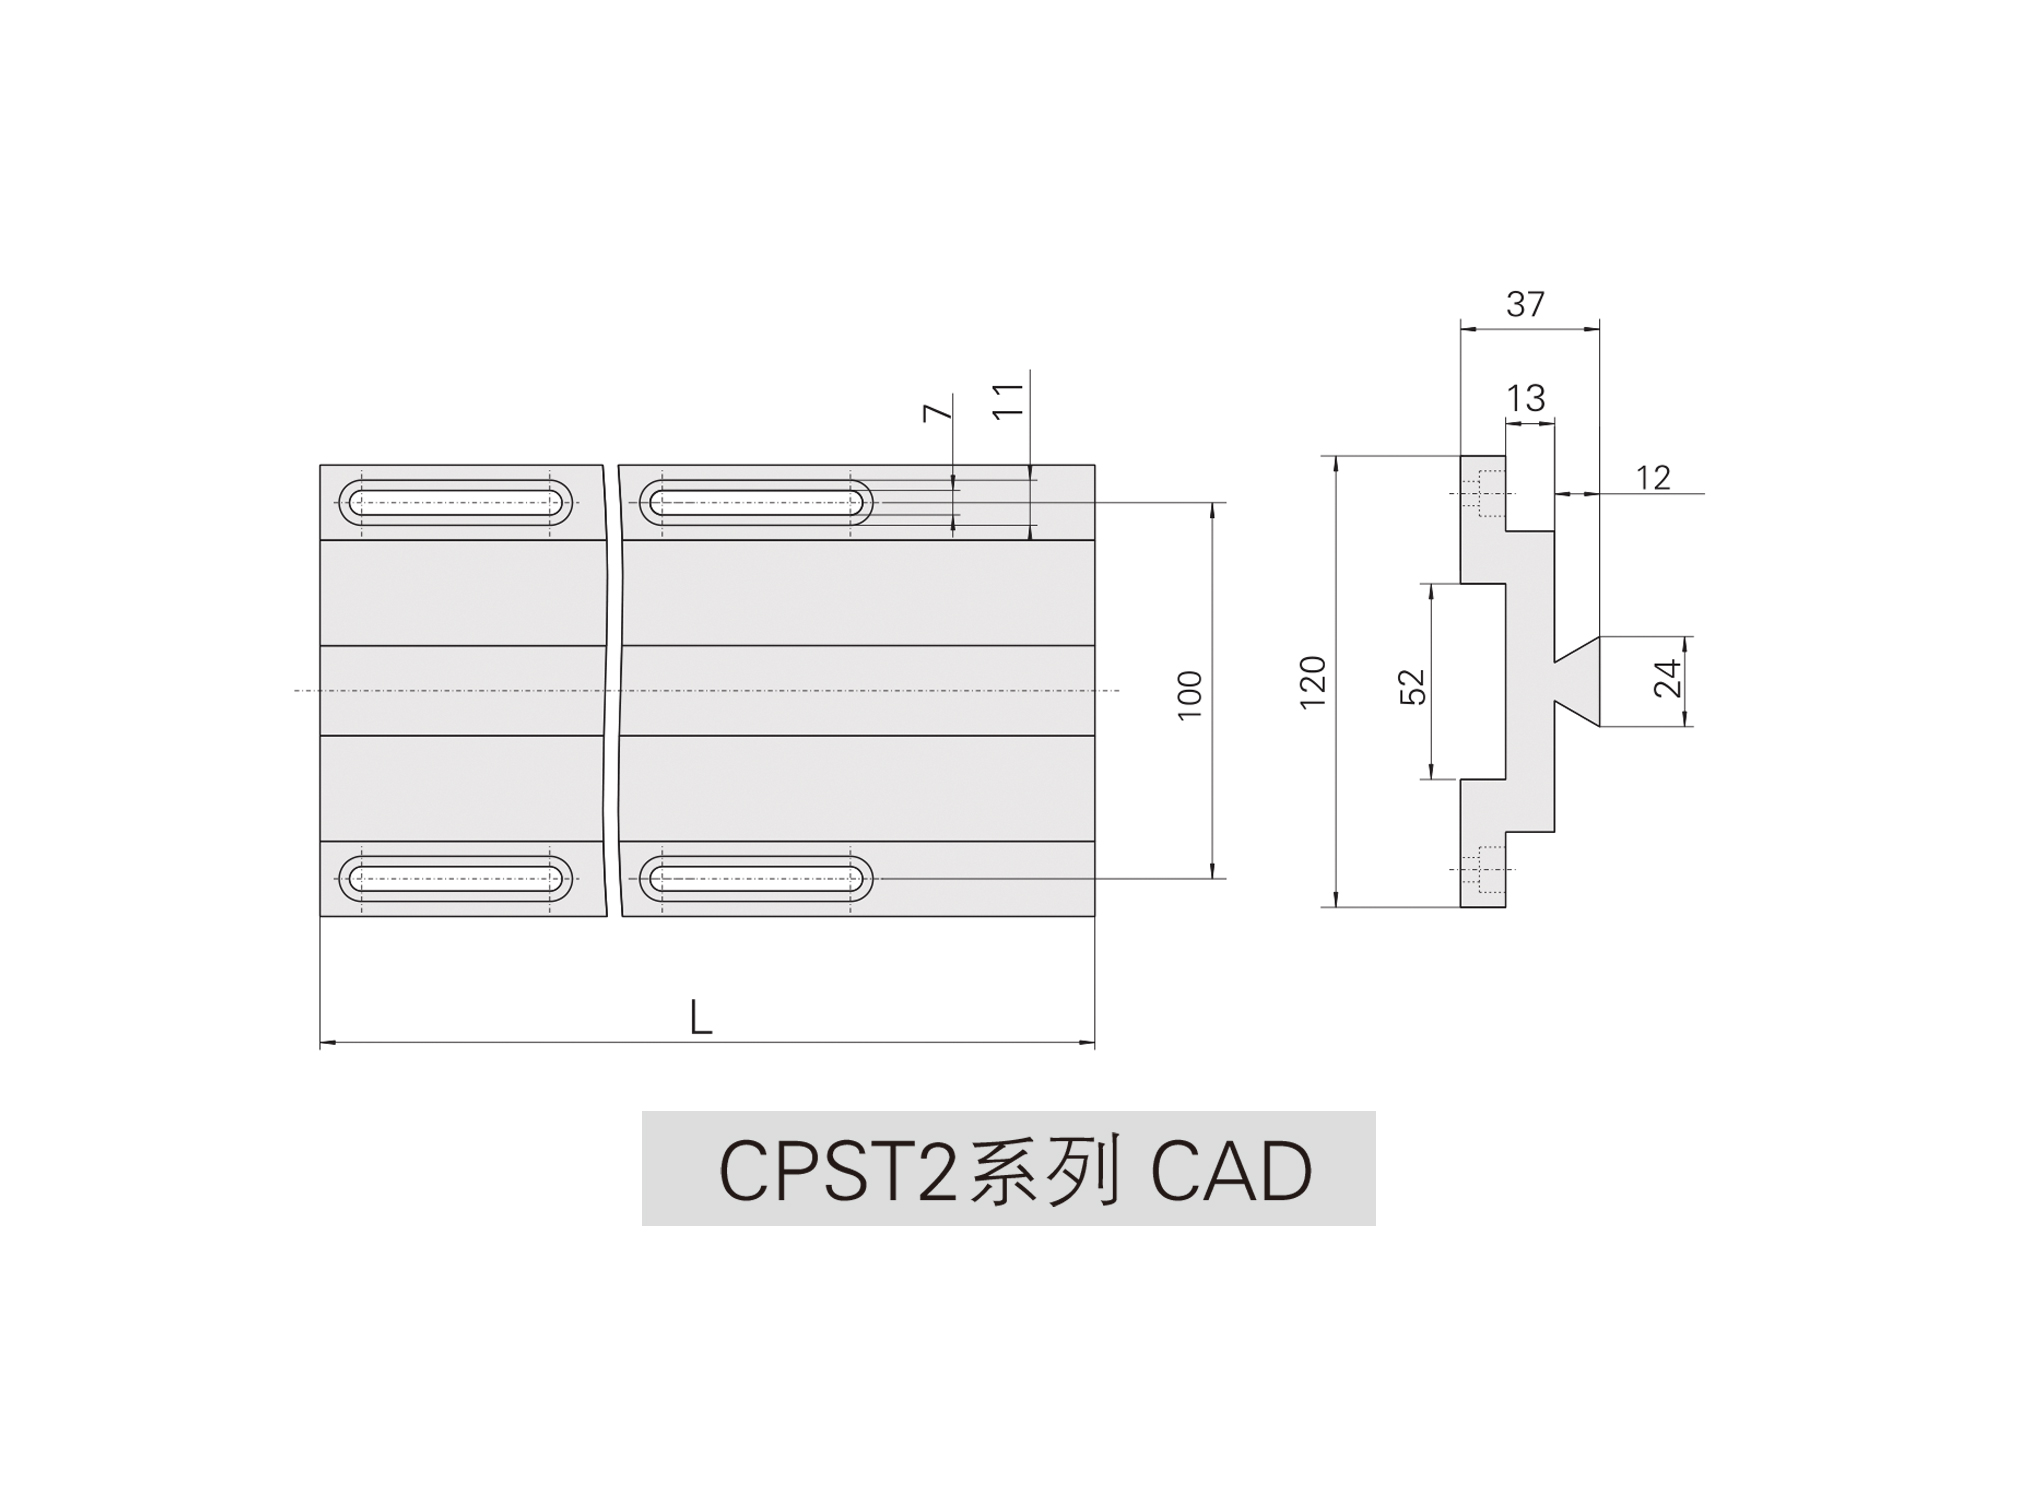 CPST2系列光学滑轨cad